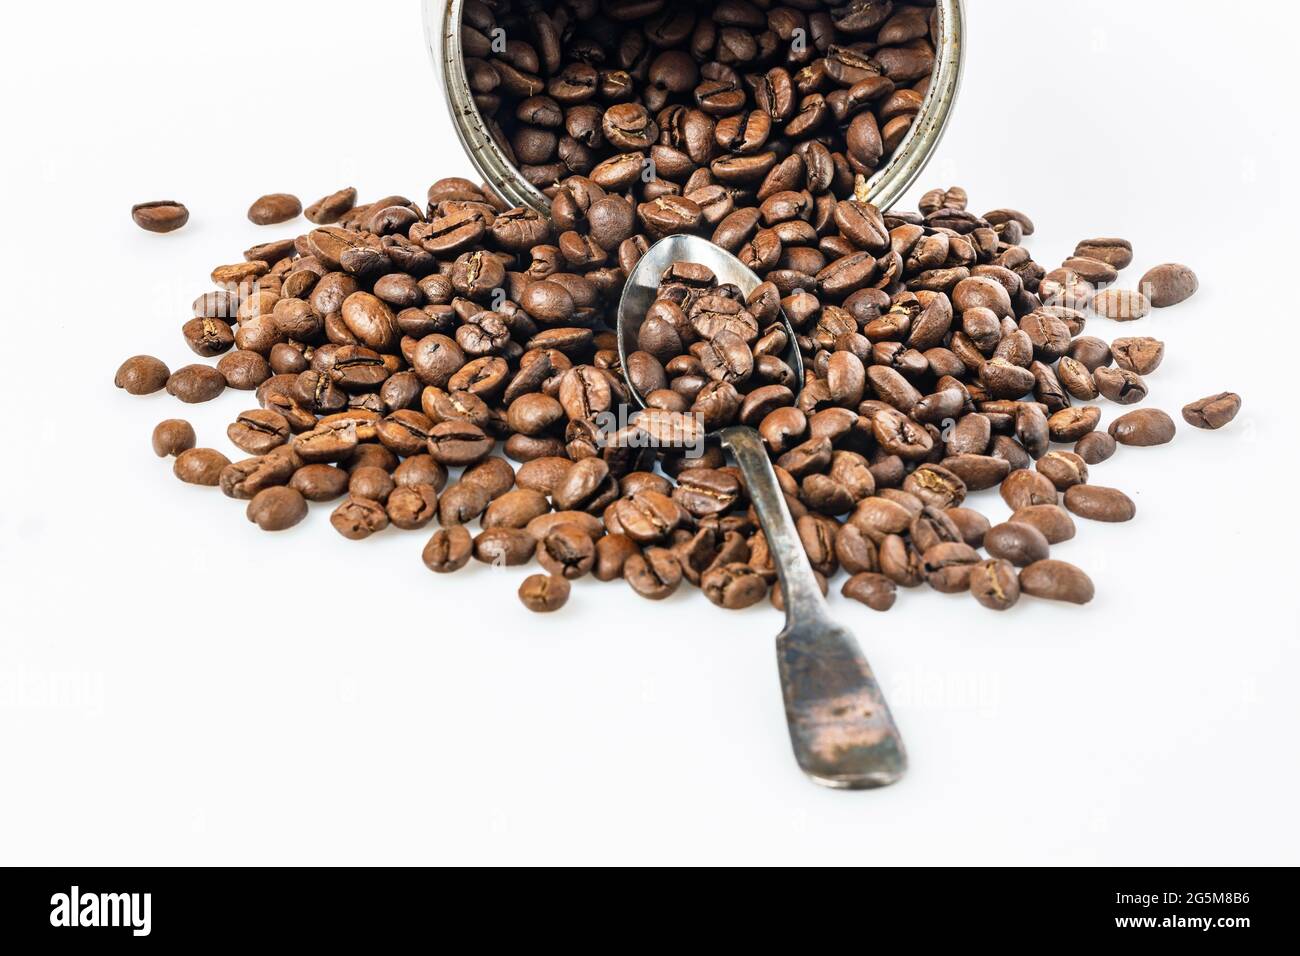 Offene Blechdose und Körner schwarzen Kaffees auf weißem Hintergrund. Duftende geröstete arabica-Bohnen auf einem weißen Tisch. Traditionelles Morgengetränk. Speicherplatz kopieren. Stockfoto